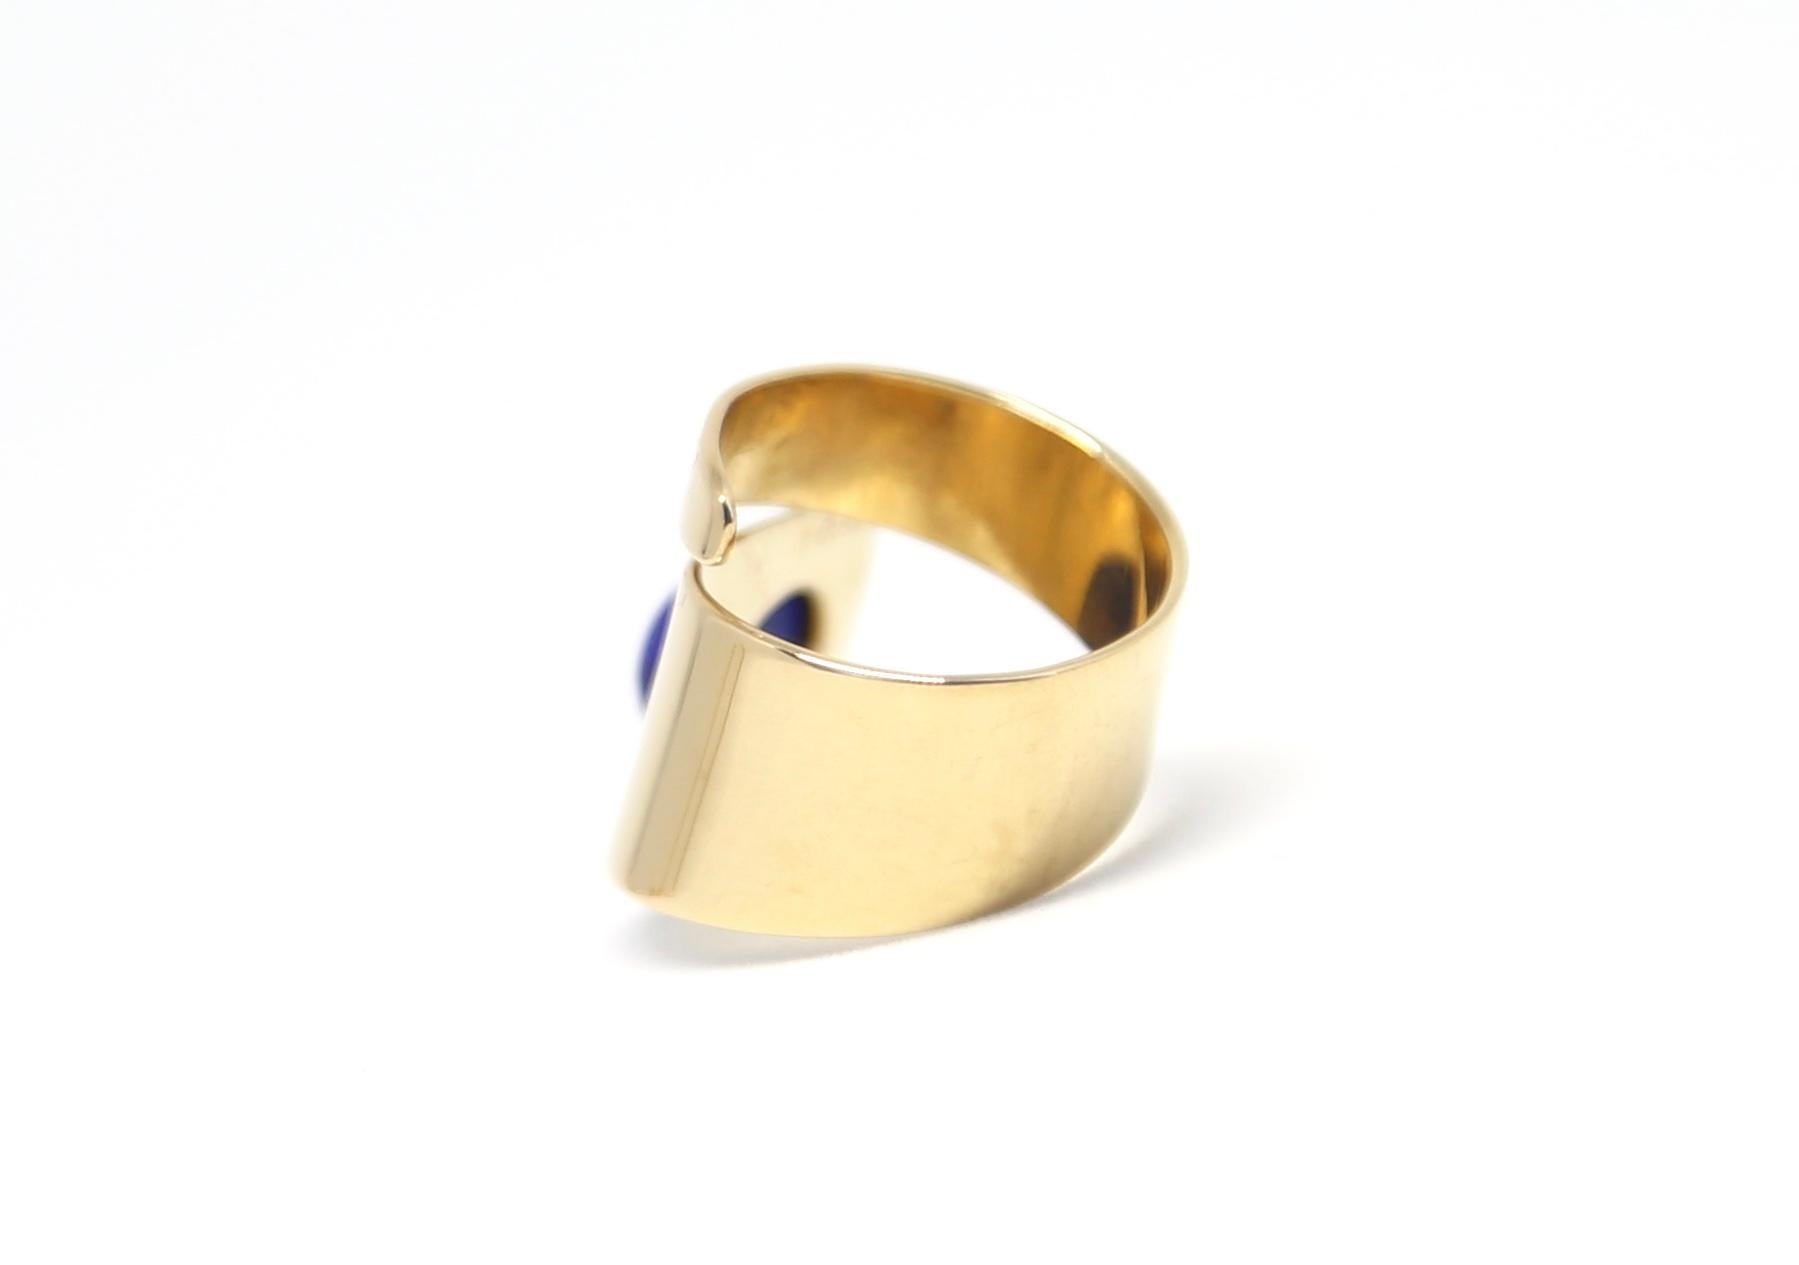 Très rare bague moderniste en or jaune 18 carats et lapis-lazuli conçue par Jean Dinh Van pour Cartier, datant des années 1960.  Actuellement, la bague convient à une taille 5,5 ou 6, mais elle peut être légèrement ajustée par un bijoutier. Marqué 